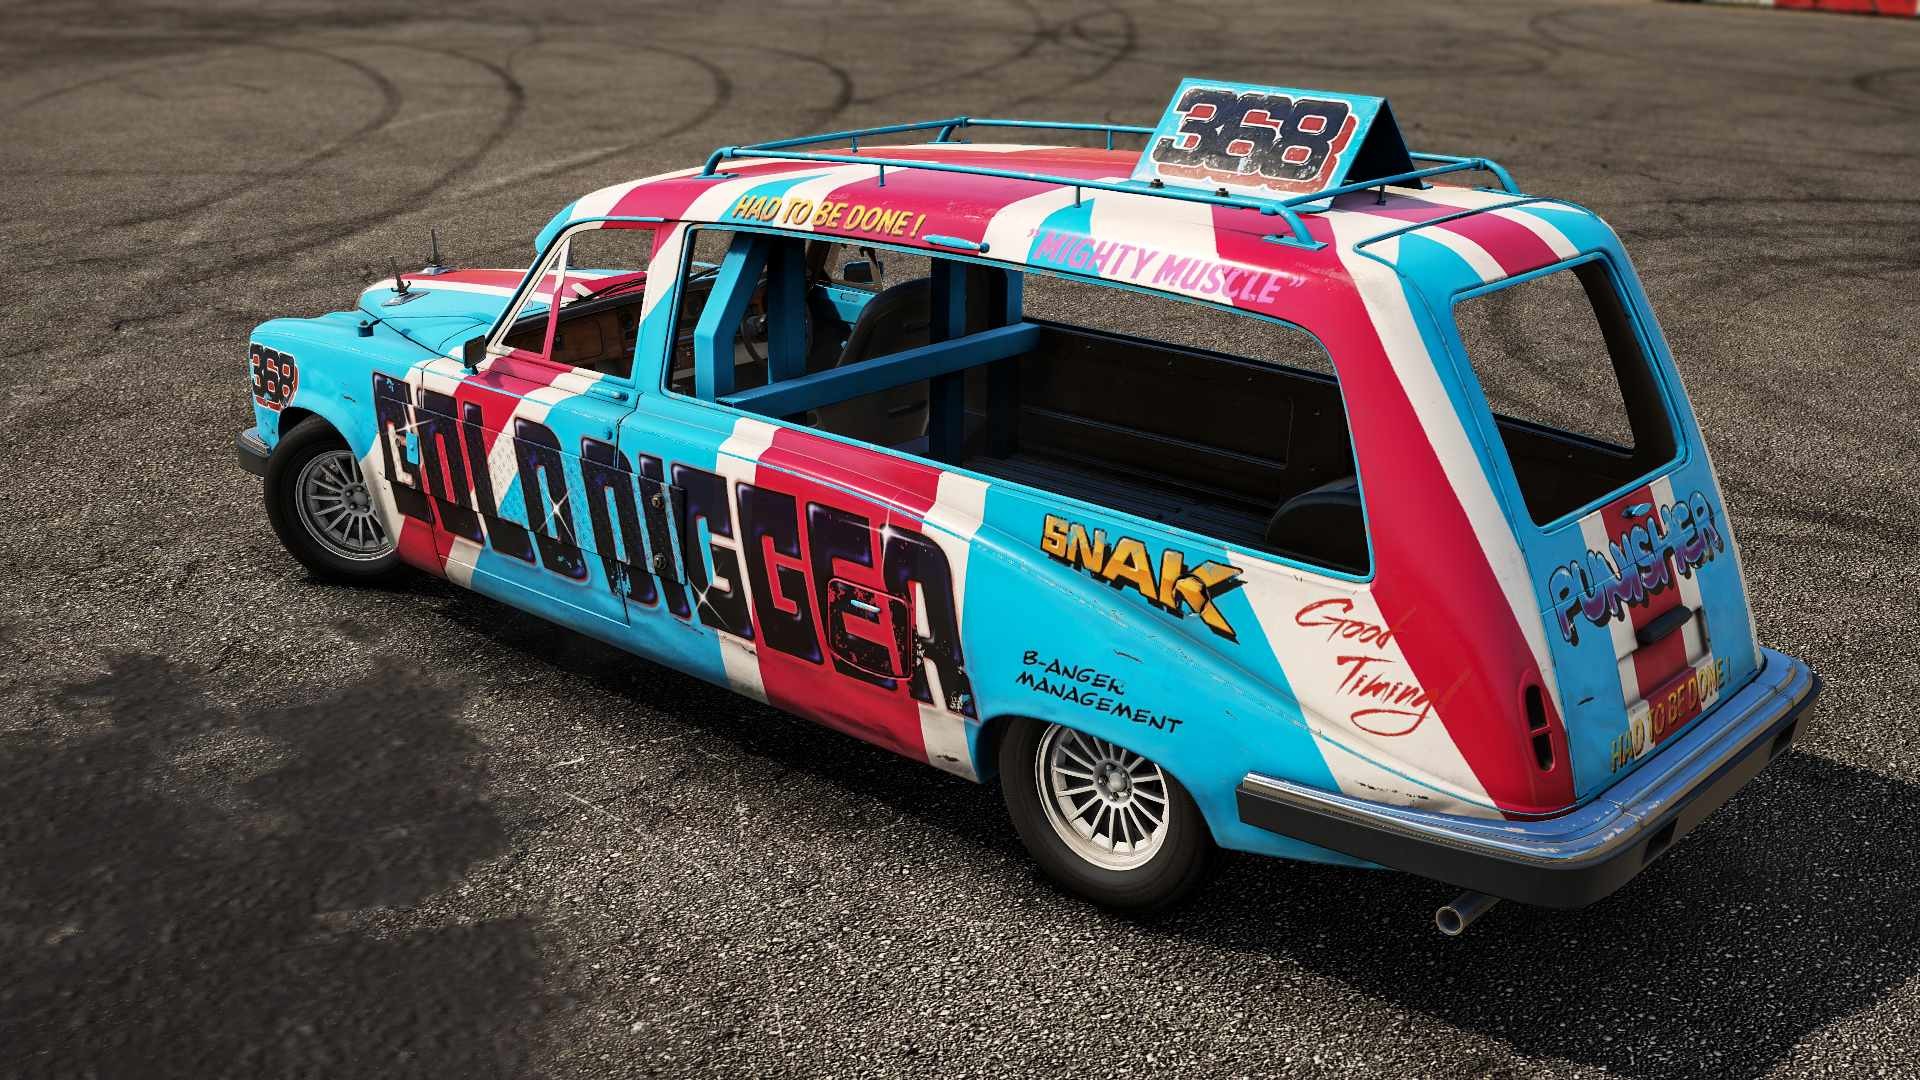 Wreckfest - Banger Racing Car Pack Featured Screenshot #1